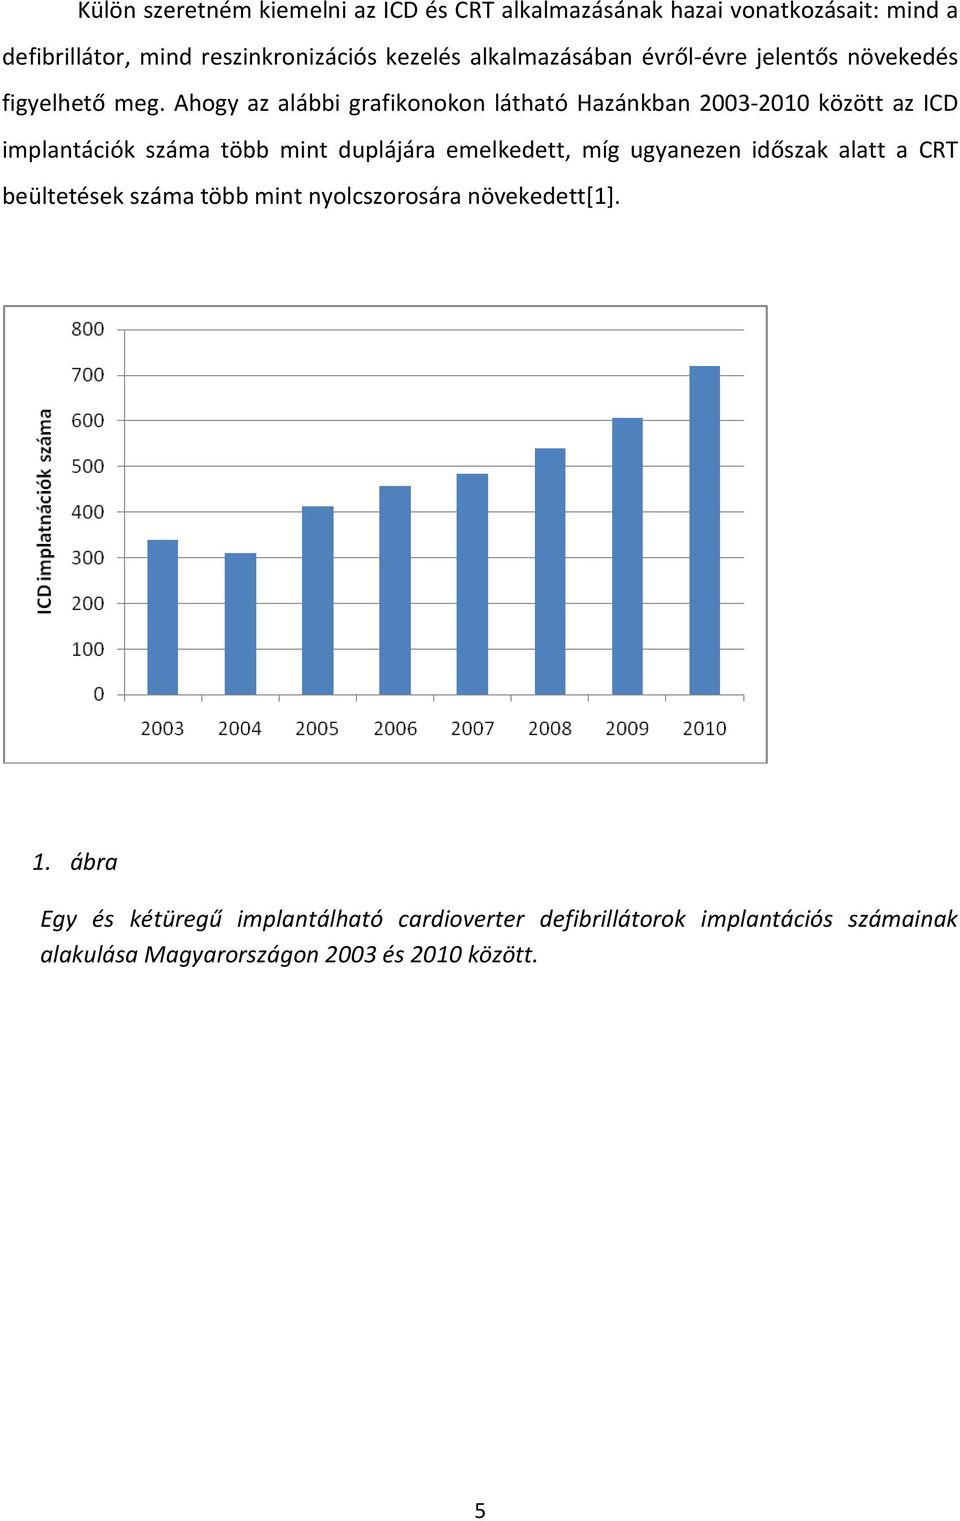 Ahogy az alábbi grafikonokon látható Hazánkban 2003-2010 között az ICD implantációk száma több mint duplájára emelkedett, míg